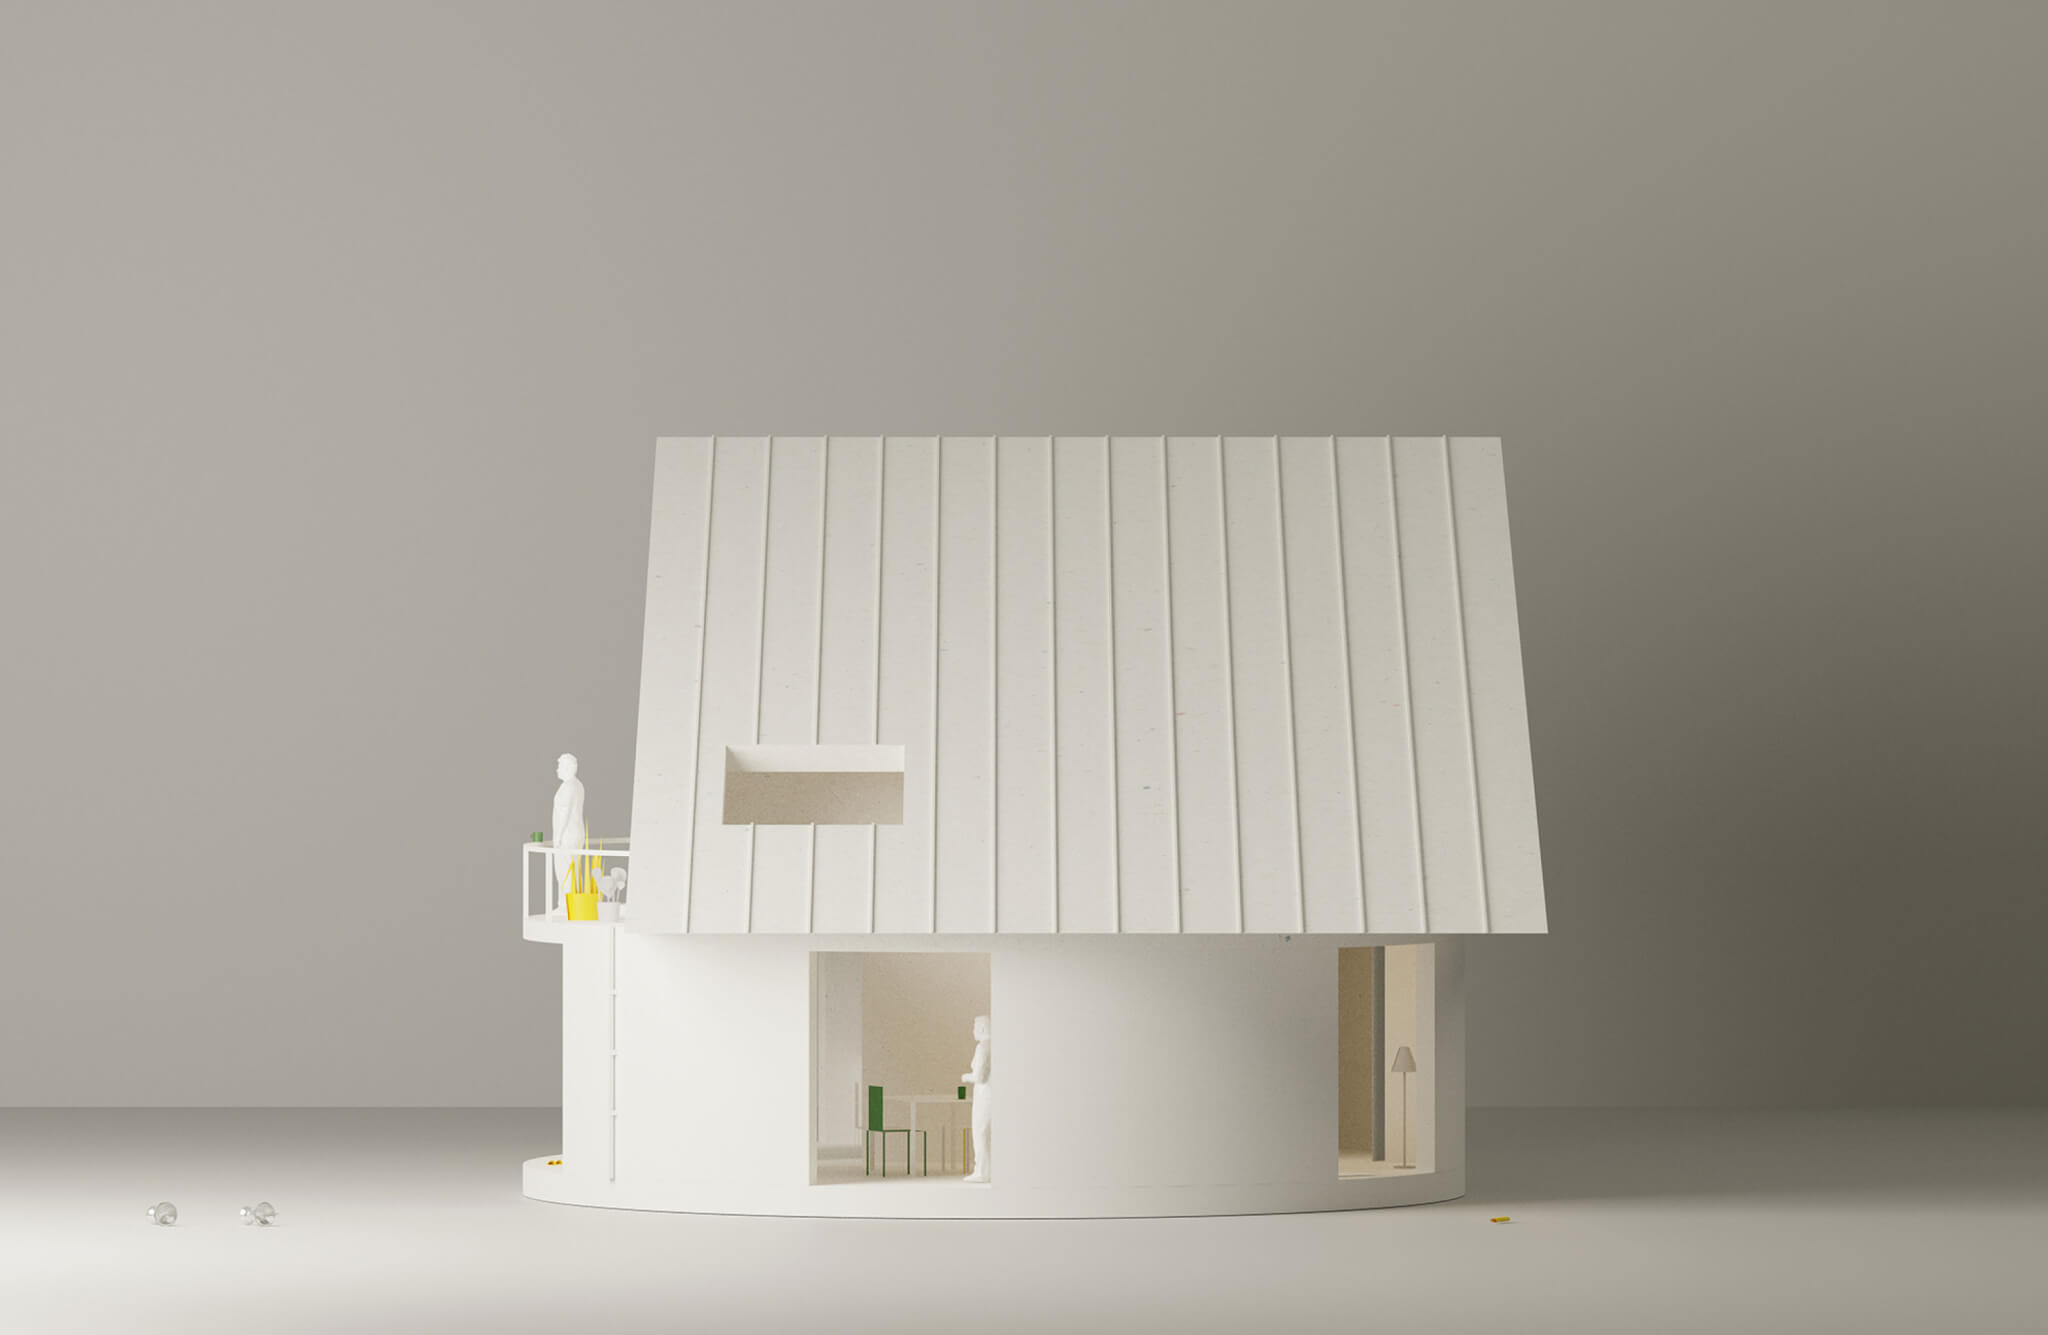 مدل سفید یک خانه